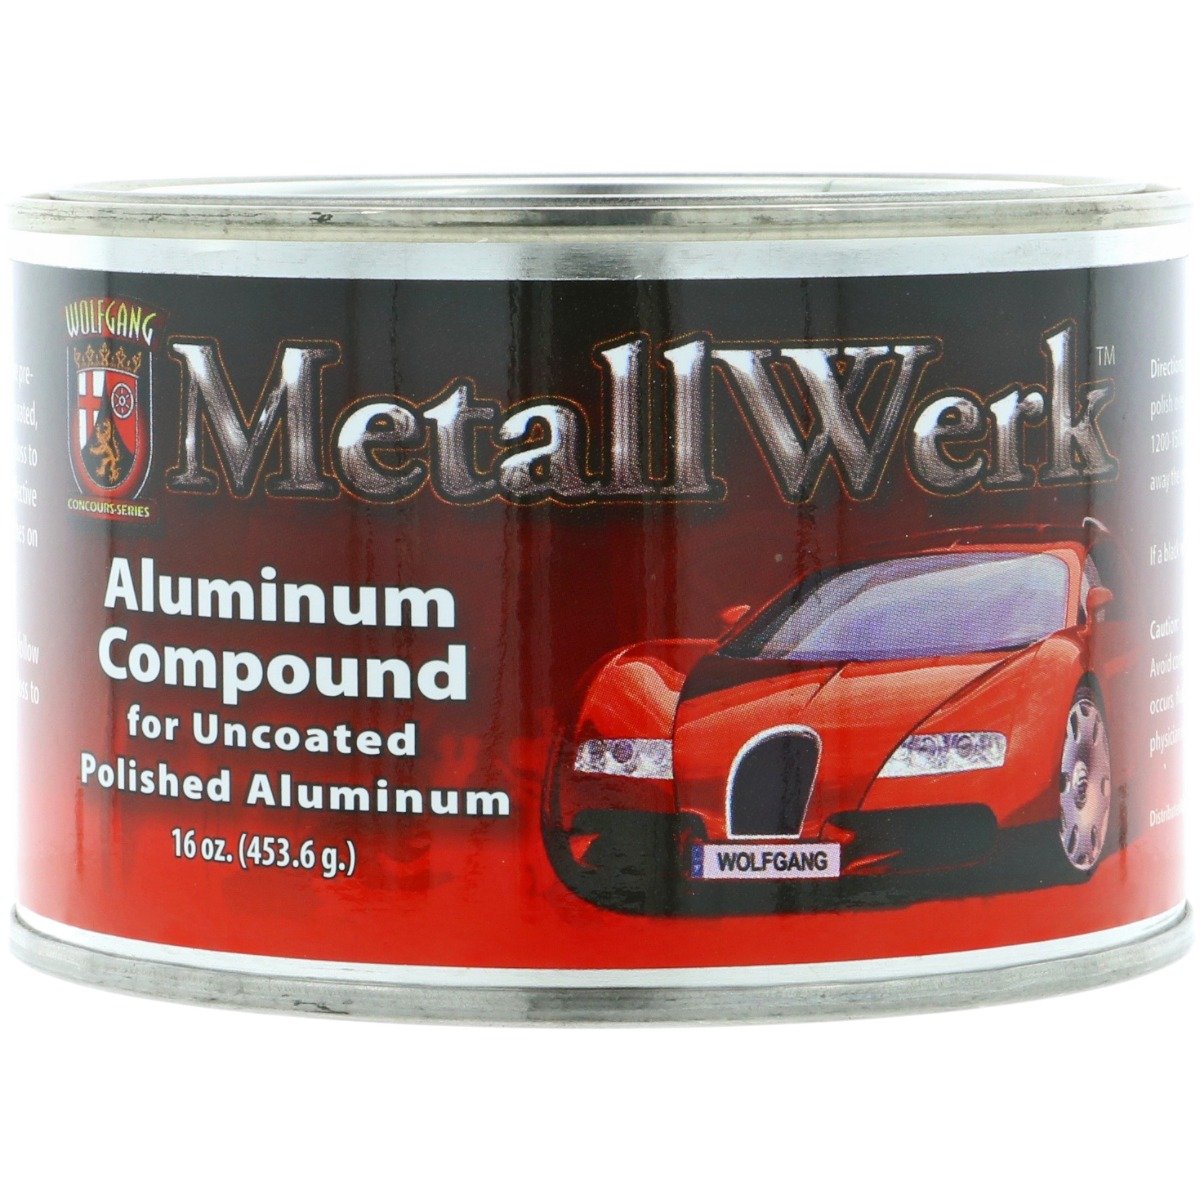 MetallWerk Aluminum Compound - 453g